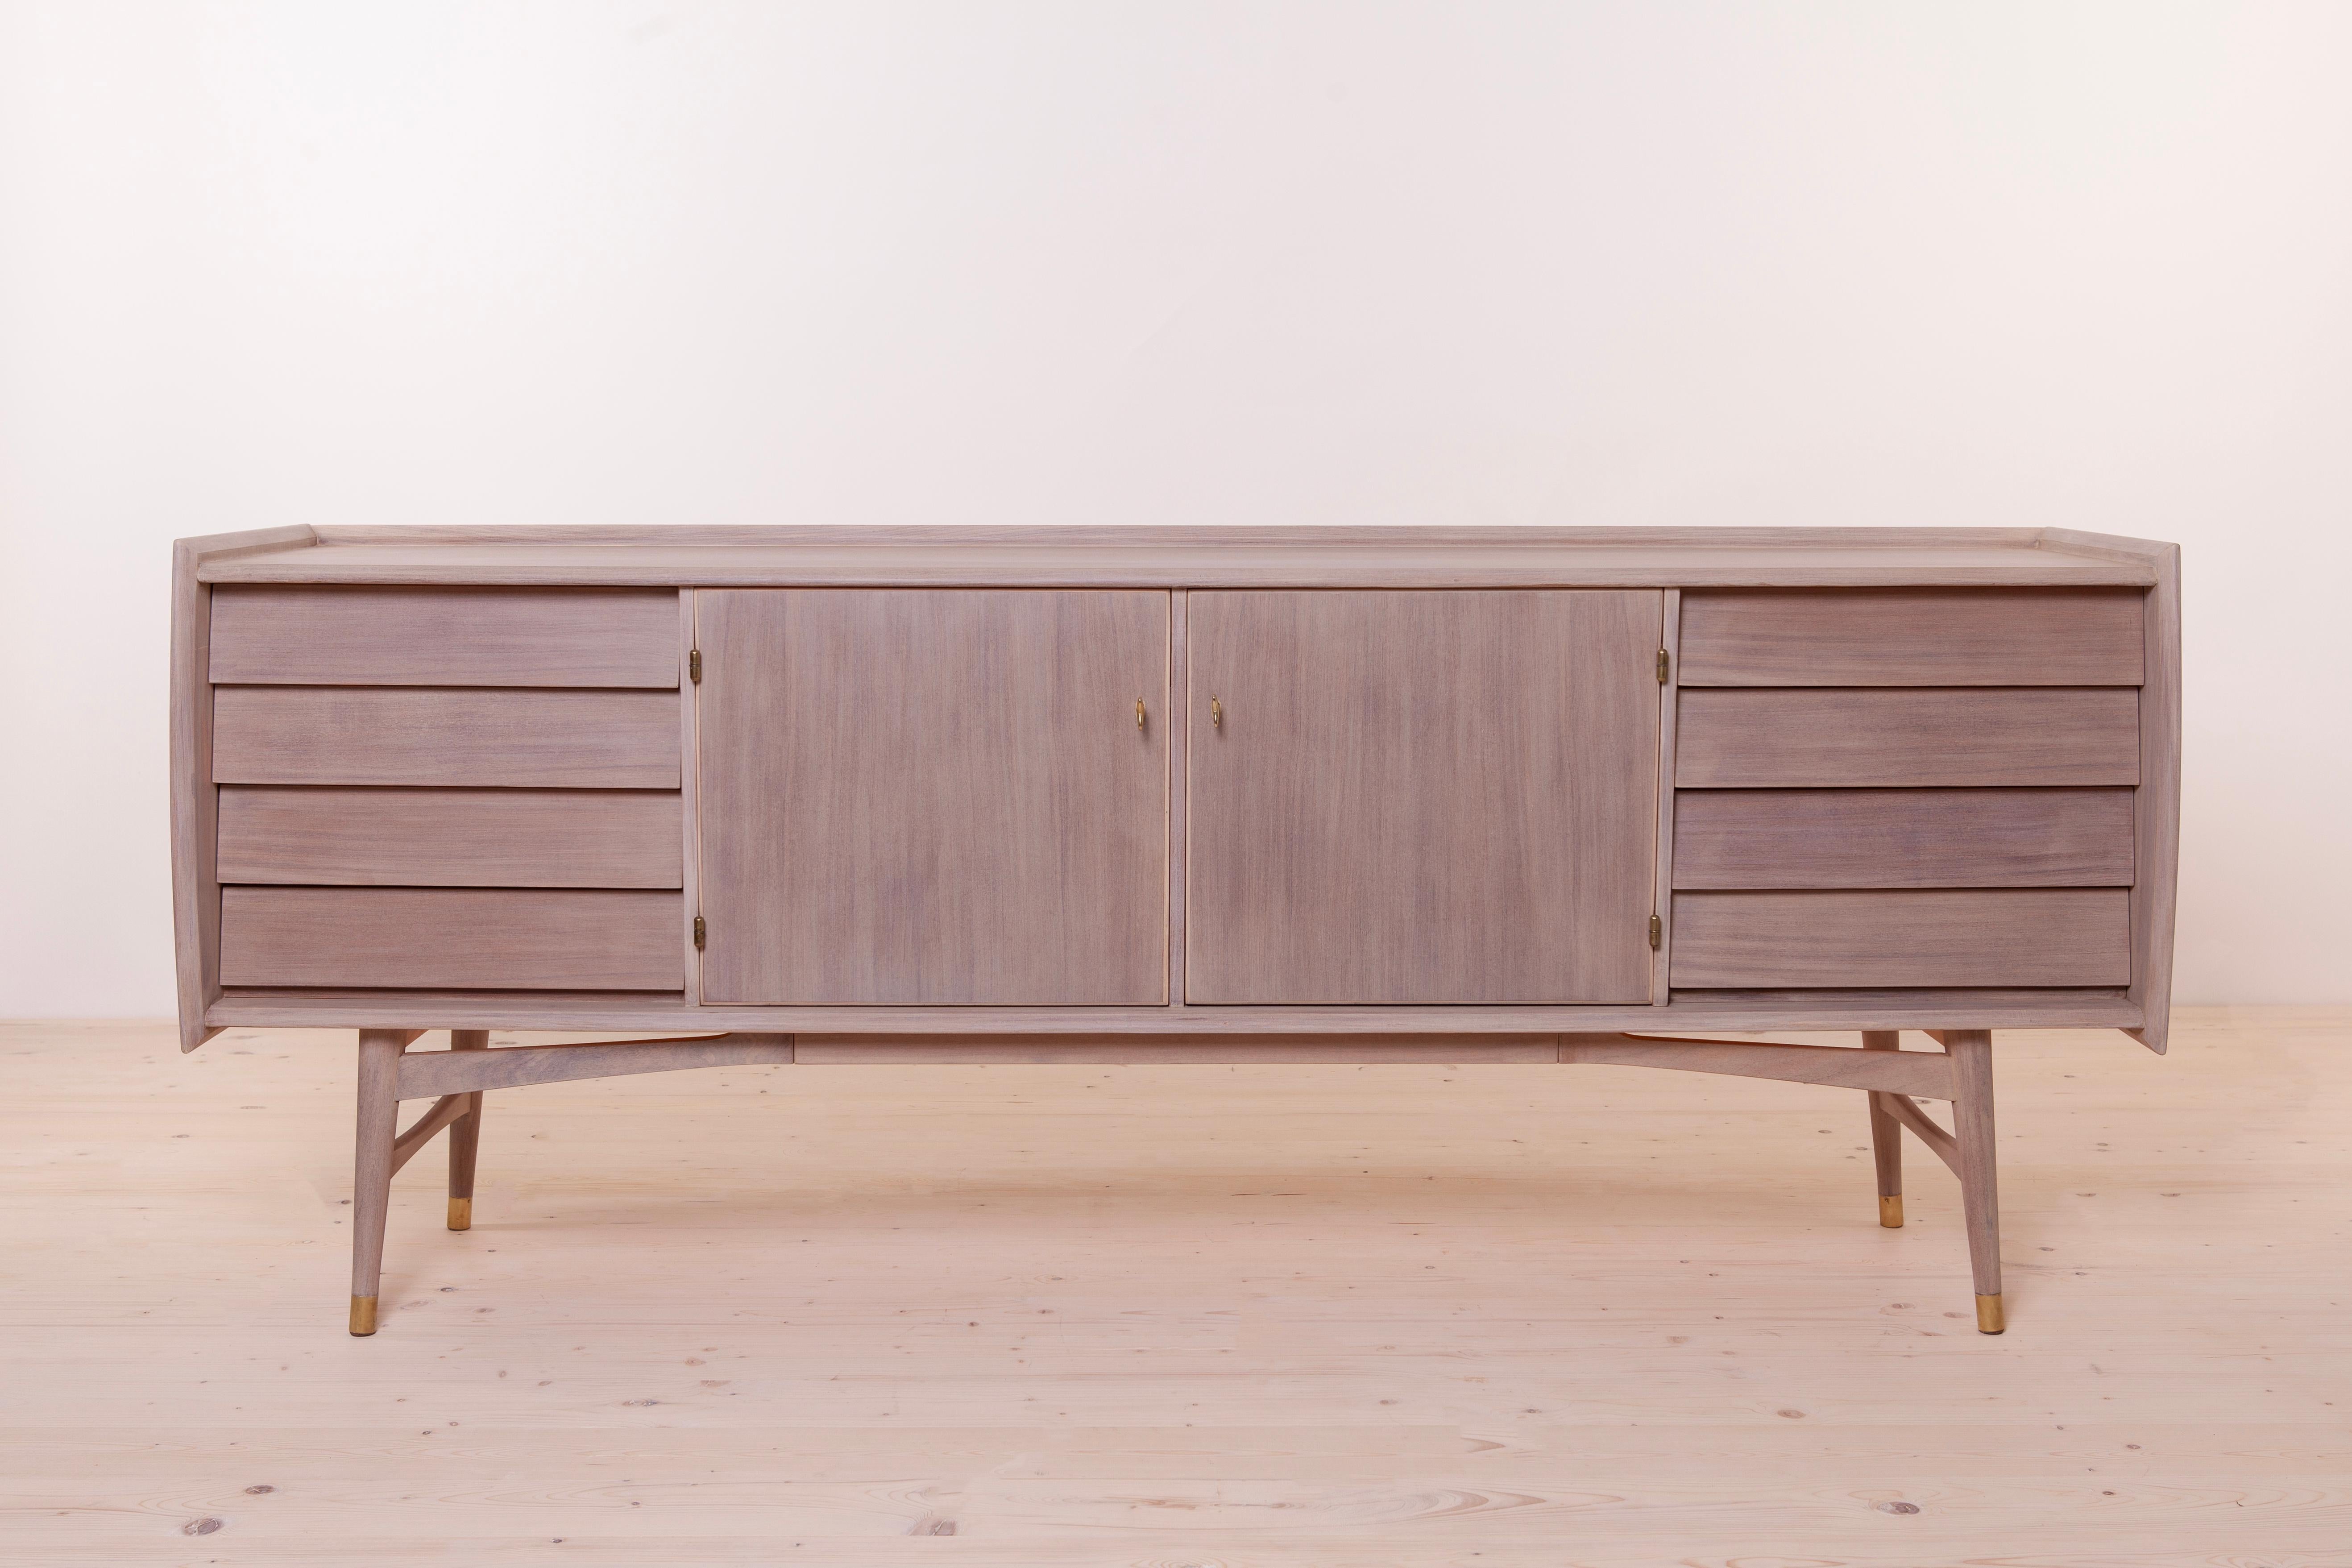 Das von Sven Andersen entworfene Sideboard ist ein exquisites Meisterwerk, das die zeitlose Eleganz des Scandinavian Modern Design mit dem kultigen Flair der Mid-Century Modern Ästhetik verbindet und Sie direkt in das schicke Ambiente der 1950er